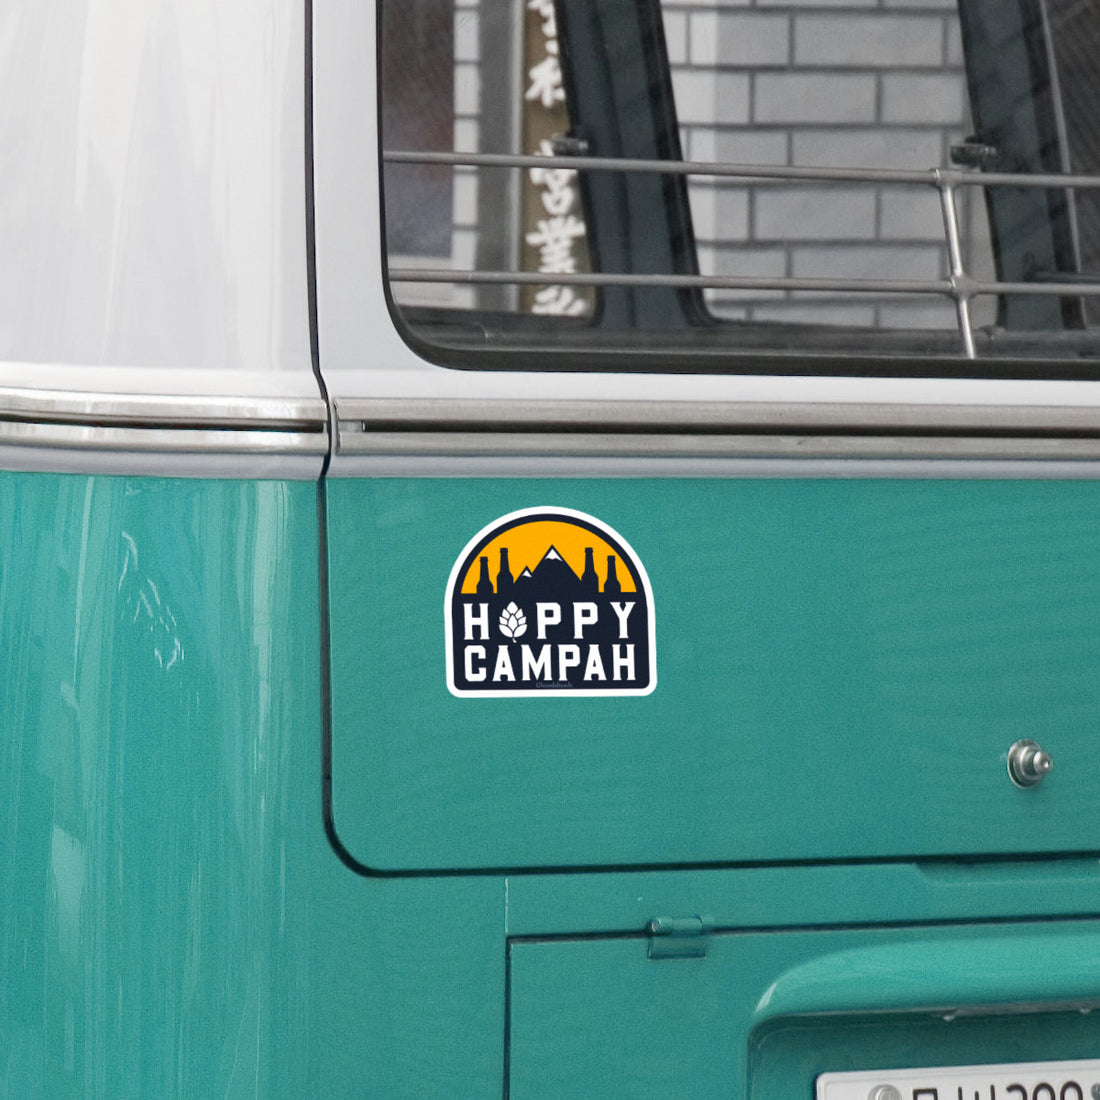 Hoppy Campah Sticker - Chowdaheadz